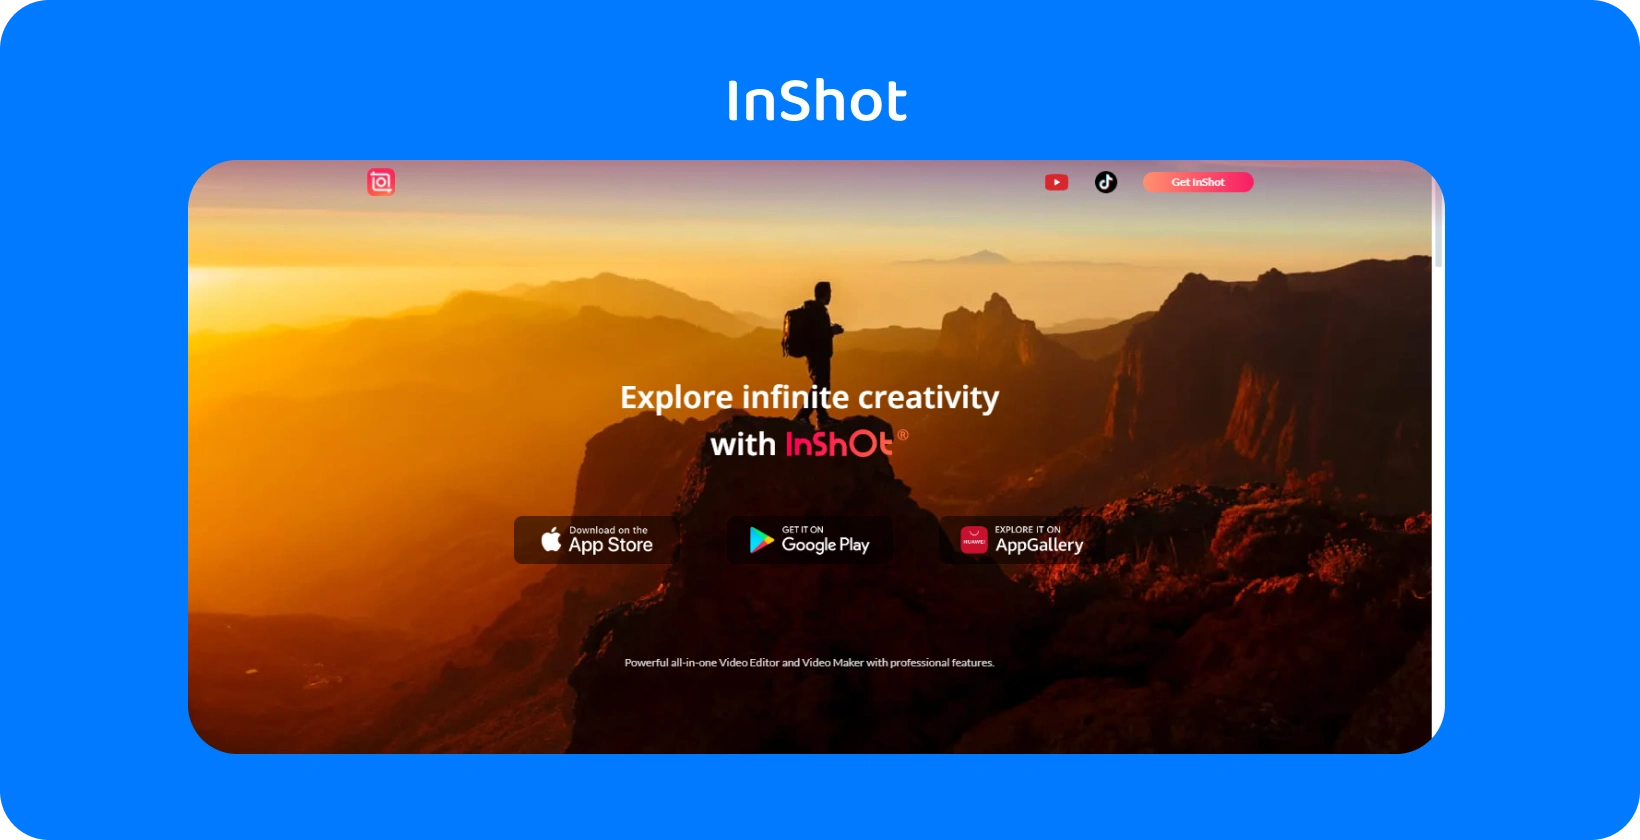 Реклама InShot додатку із зображенням туриста на заході сонця, що символізує обіцянку програми досліджувати нескінченну творчість у редагуванні відео.
